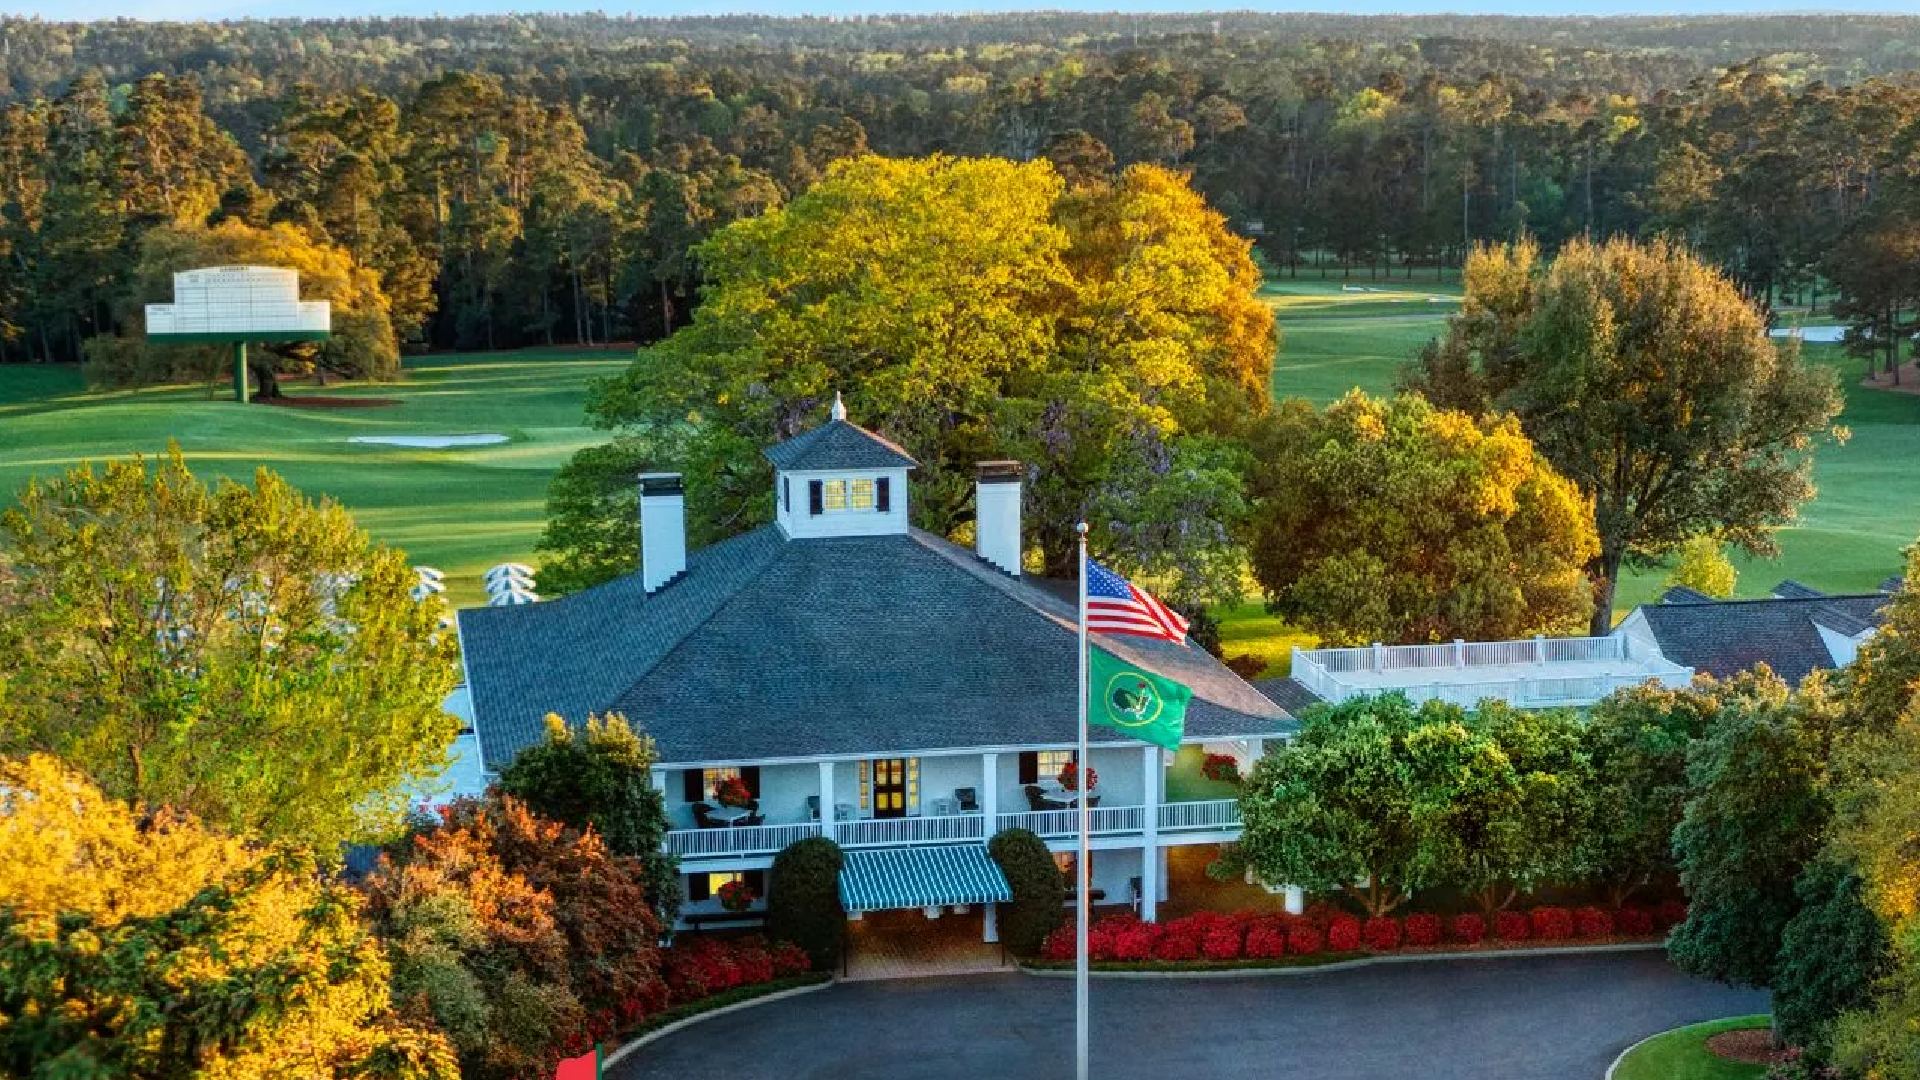 EA Sports PGA Tour: A golf course can be seen